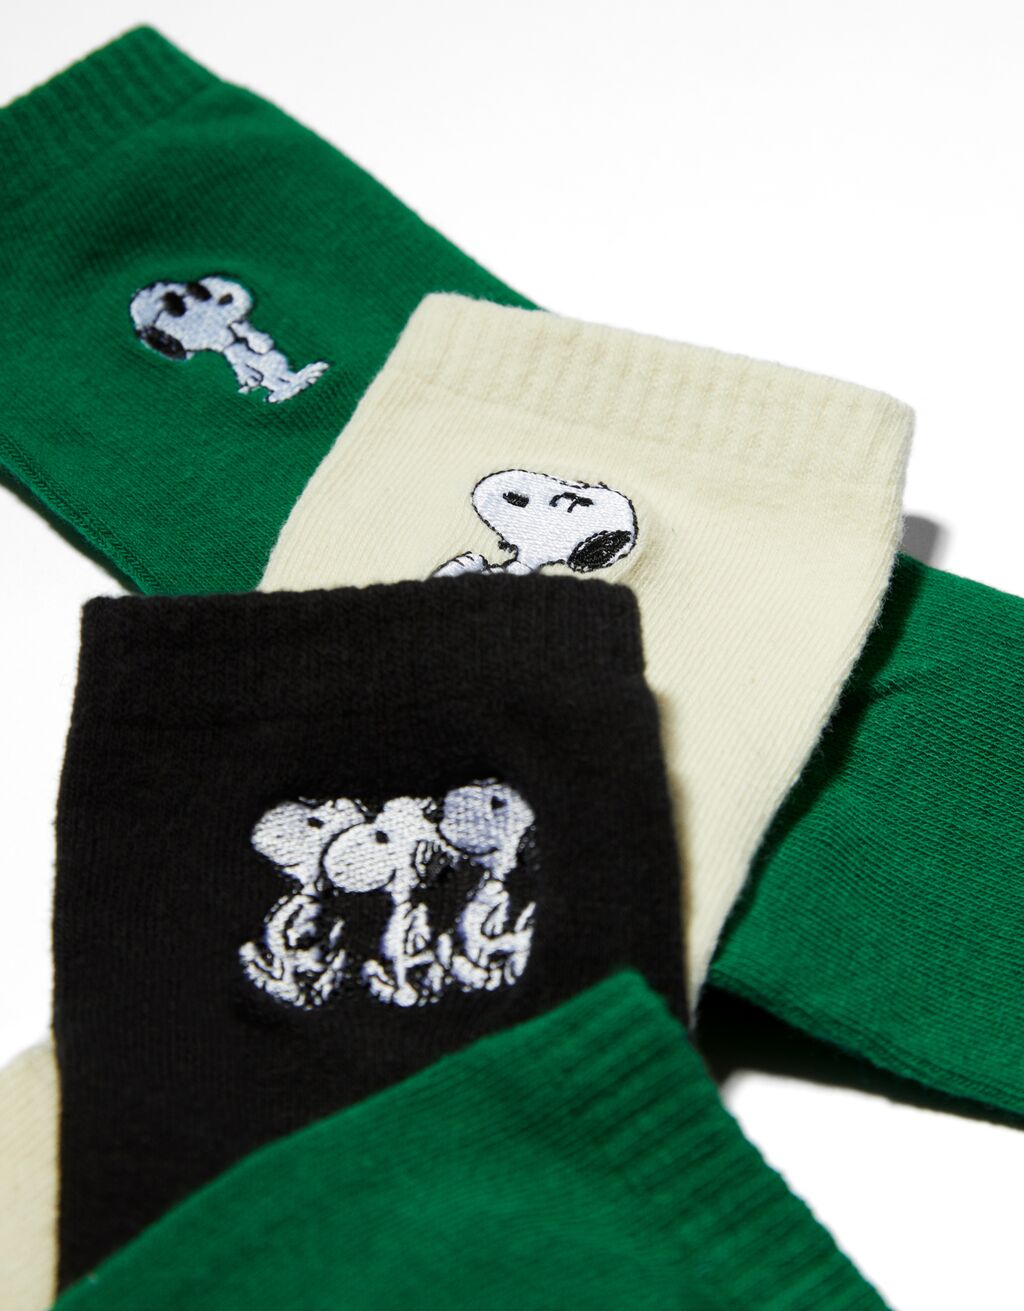 3er-Pack Snoopy-Socken